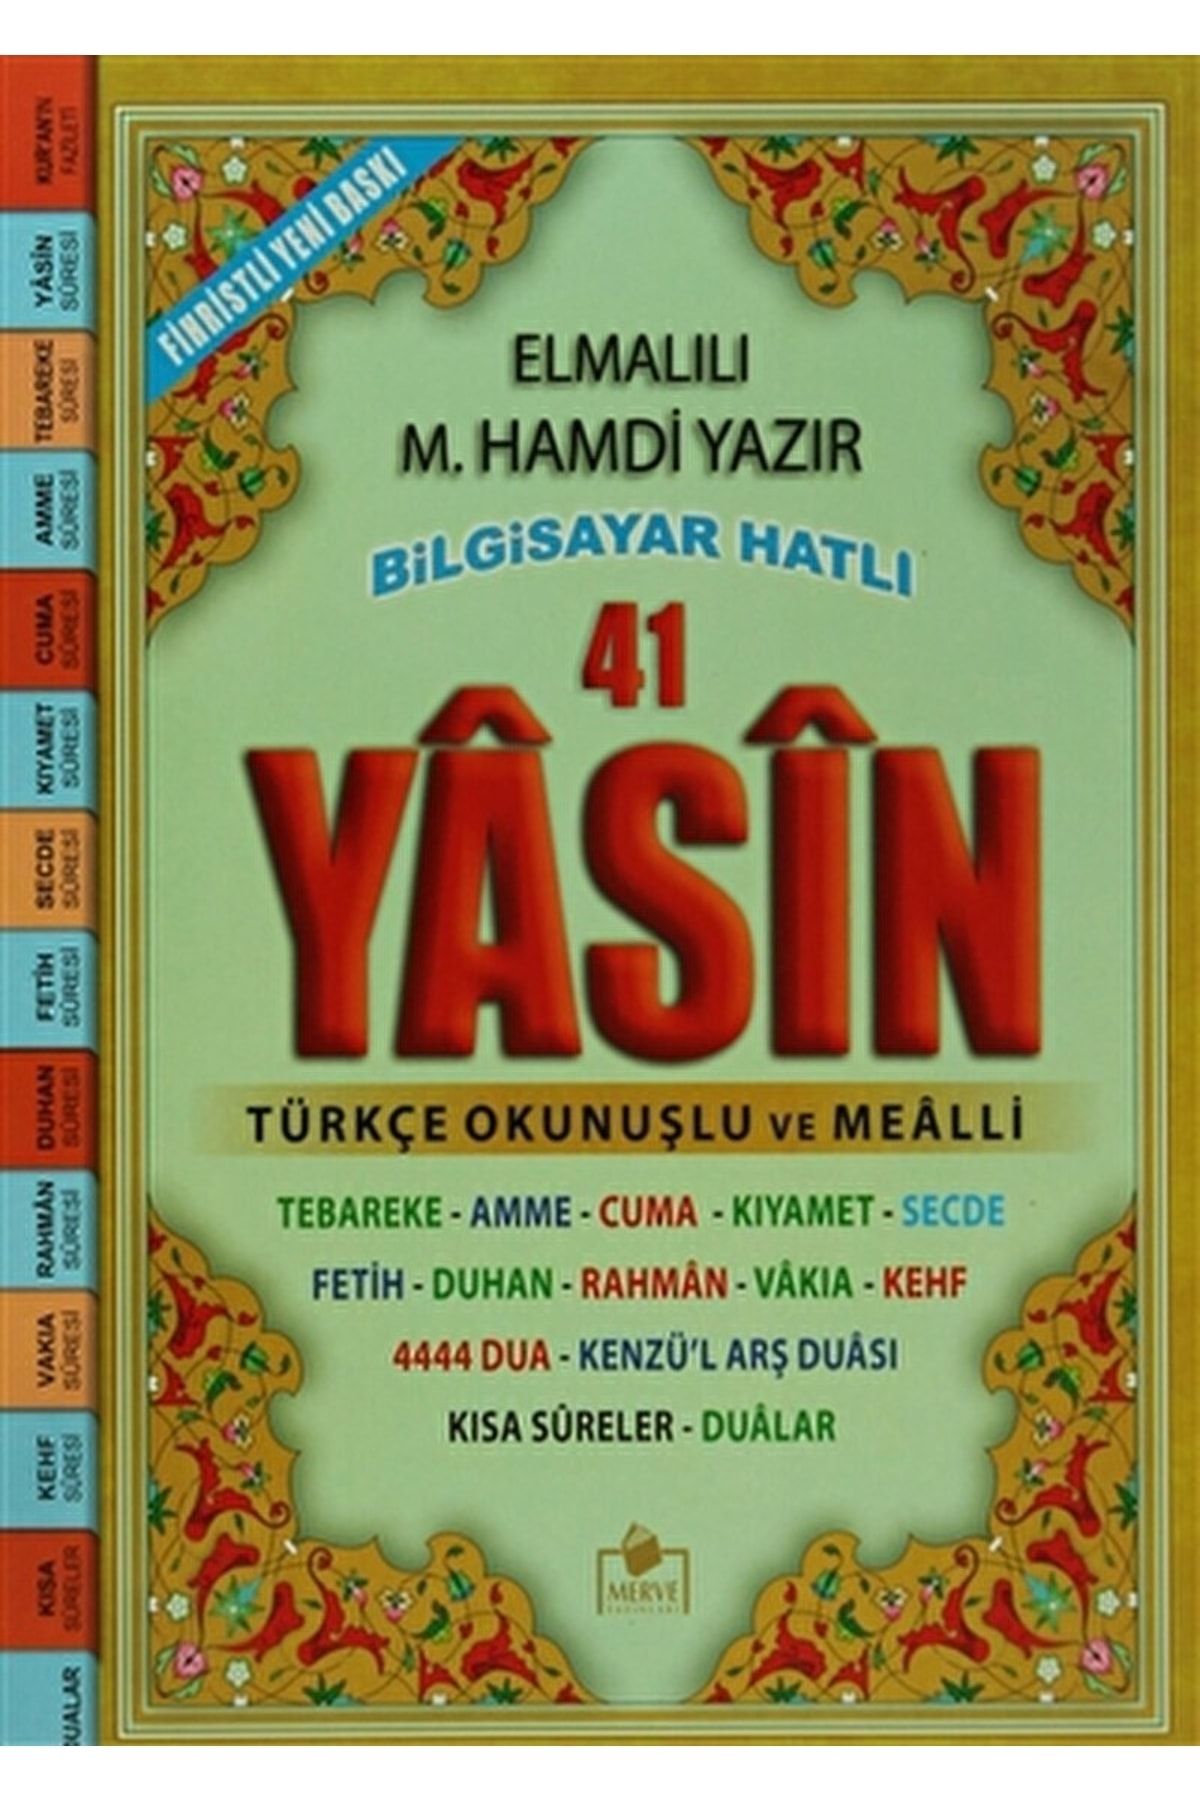 Merve Yayınları 41 Yasin Bilgisayar Hatlı Türkçe Okunuşlu Ve Mealli (cami Boy Yasin-001) / 9786055242190